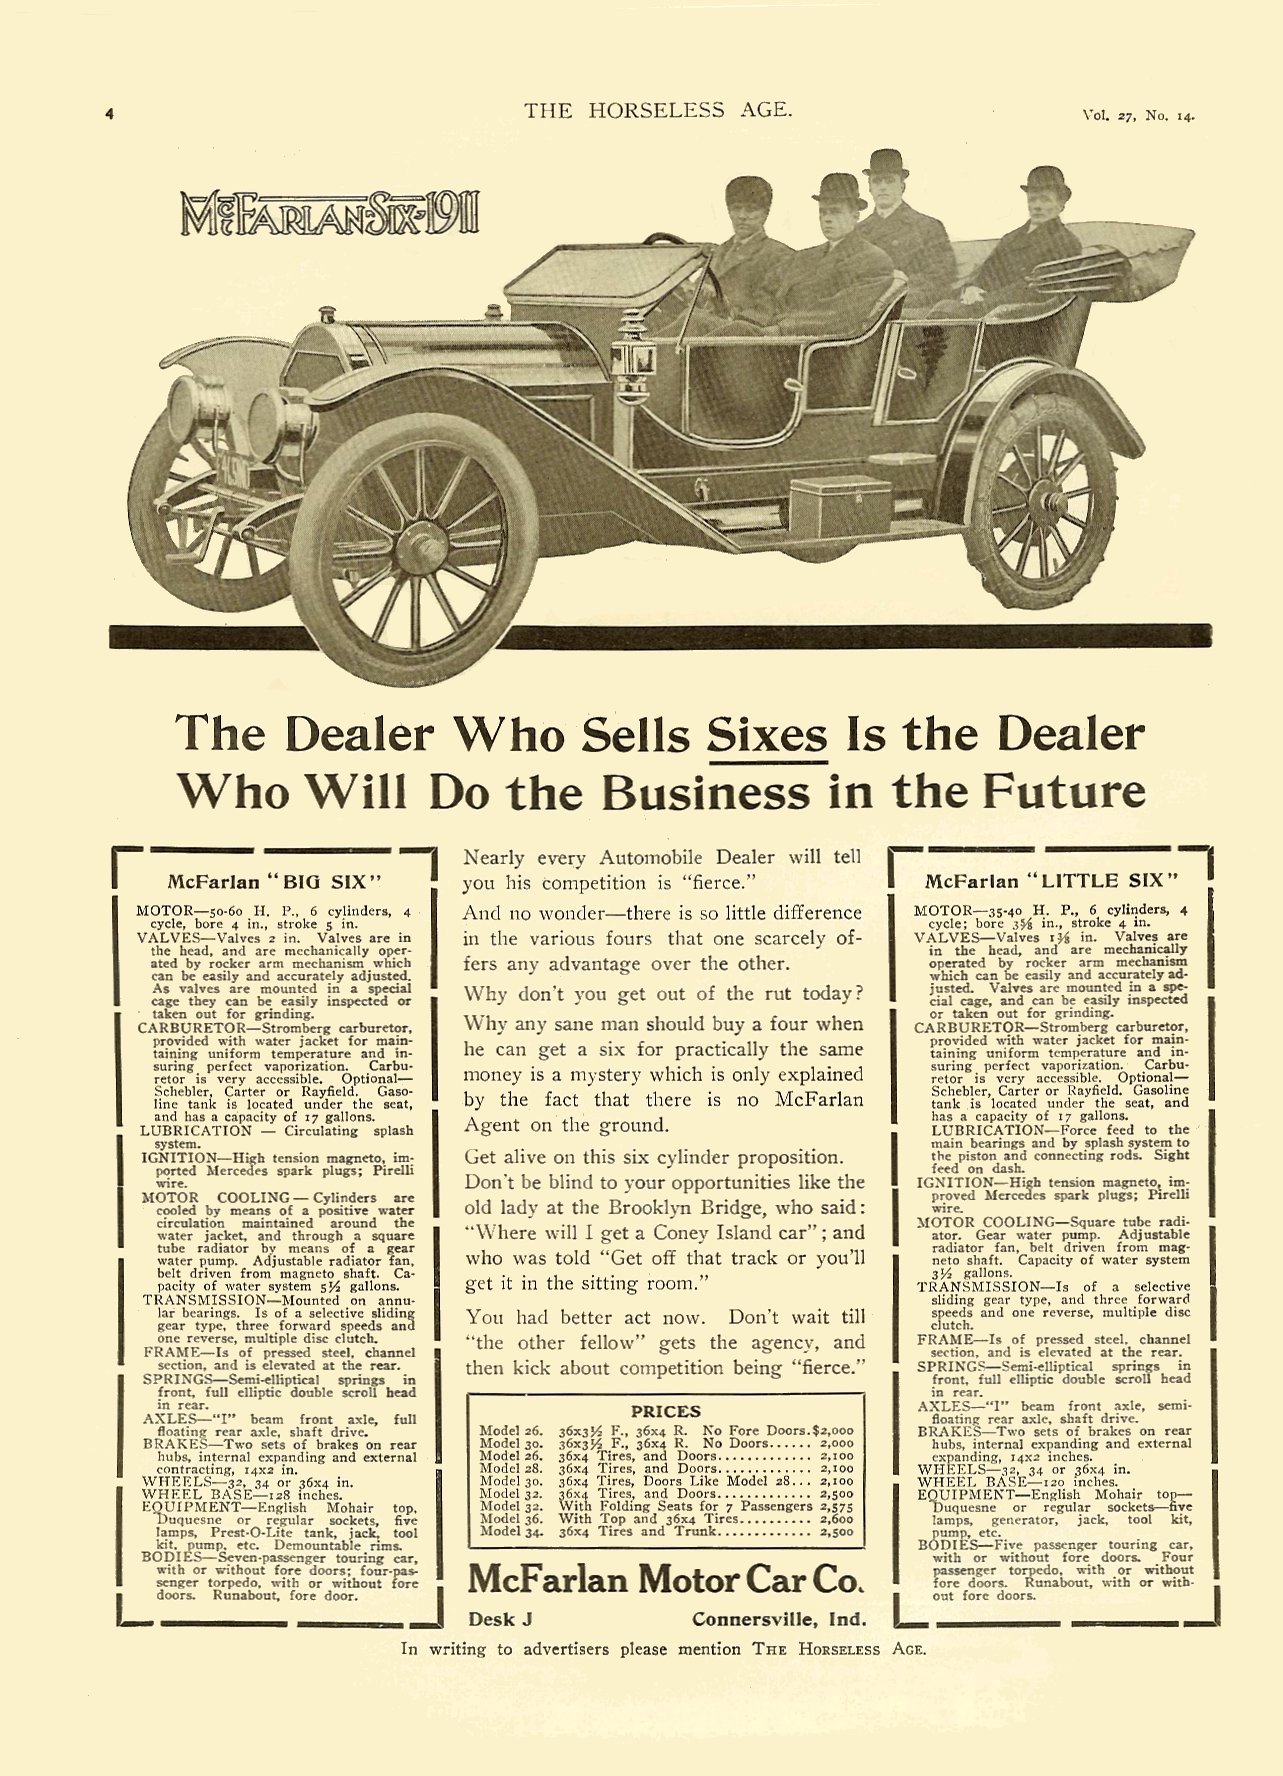 1911 McFarlan Auto Advertising